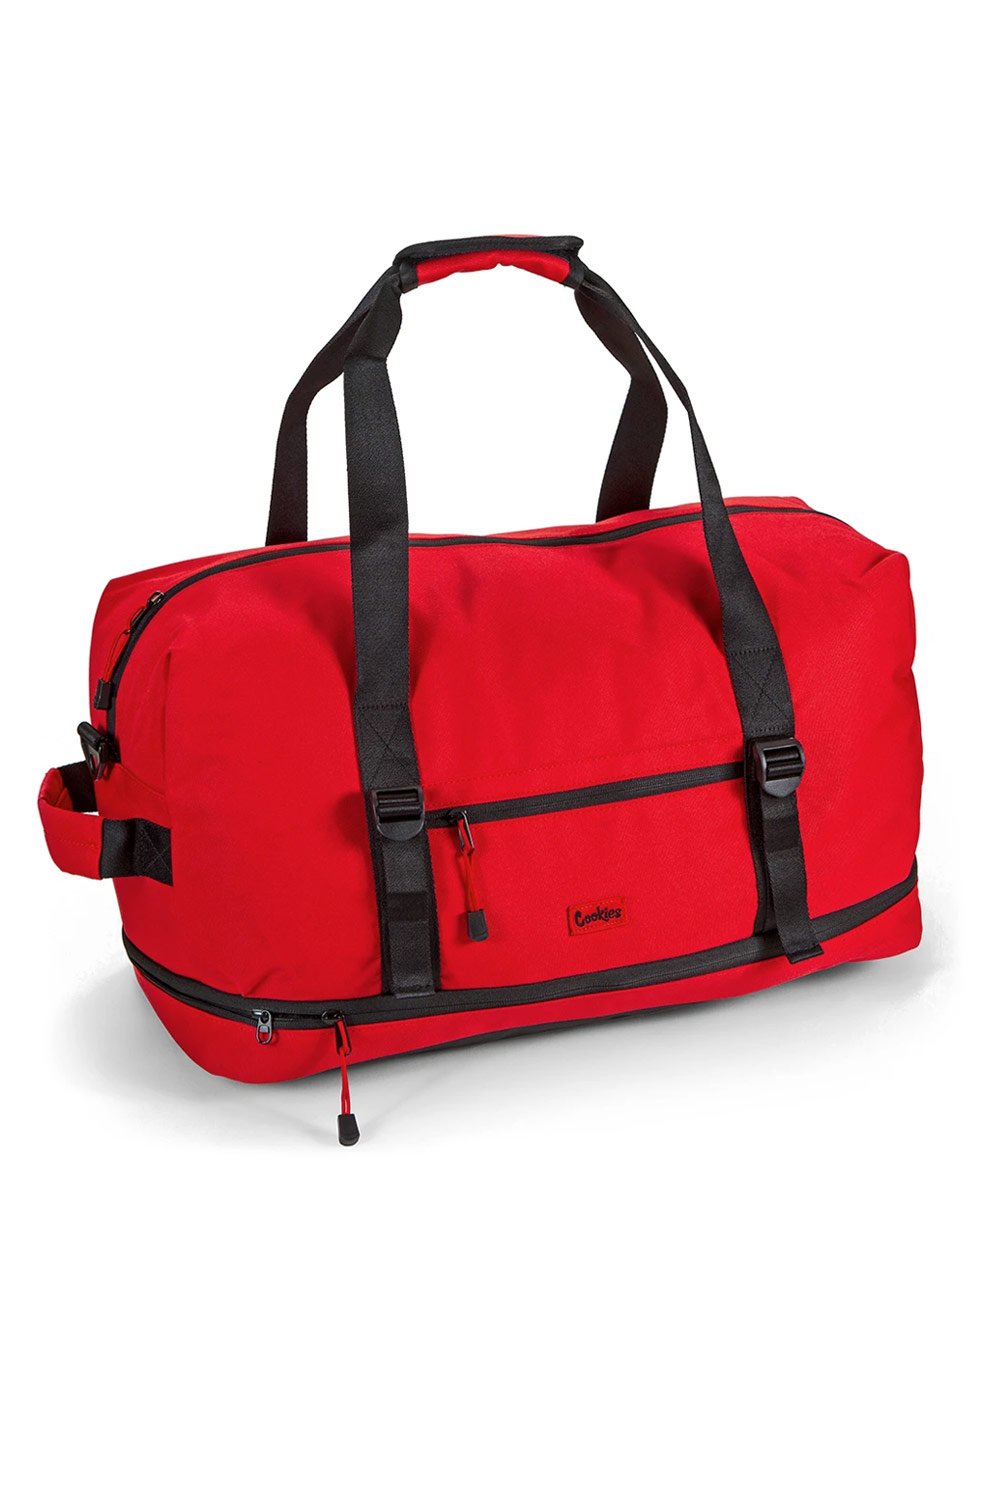 Explorer Duffel Bag, CarryOn